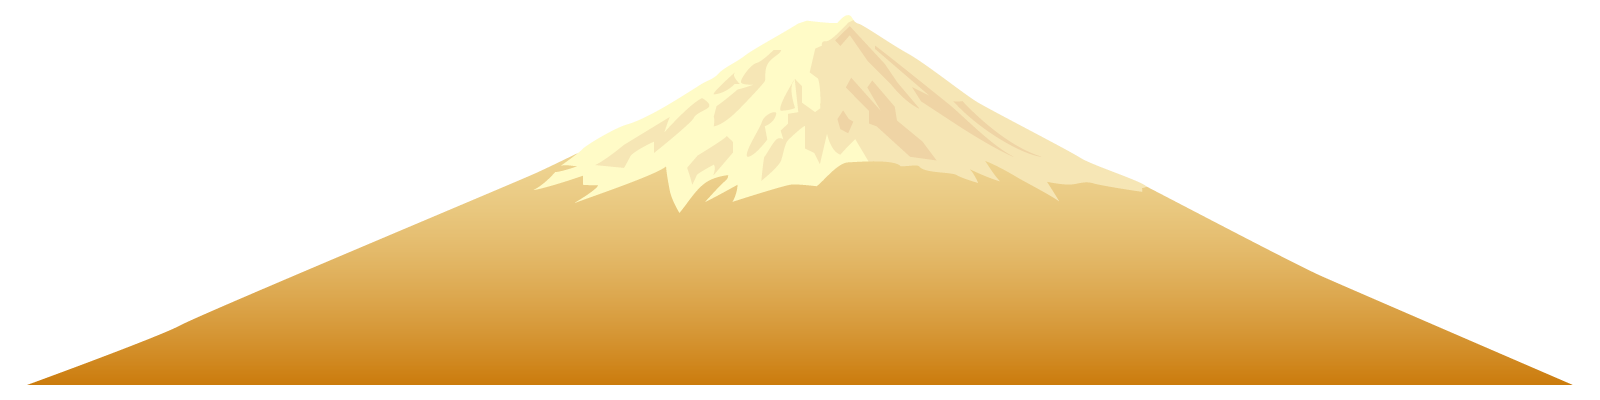 お正月・富士山の無料イラスト1-3